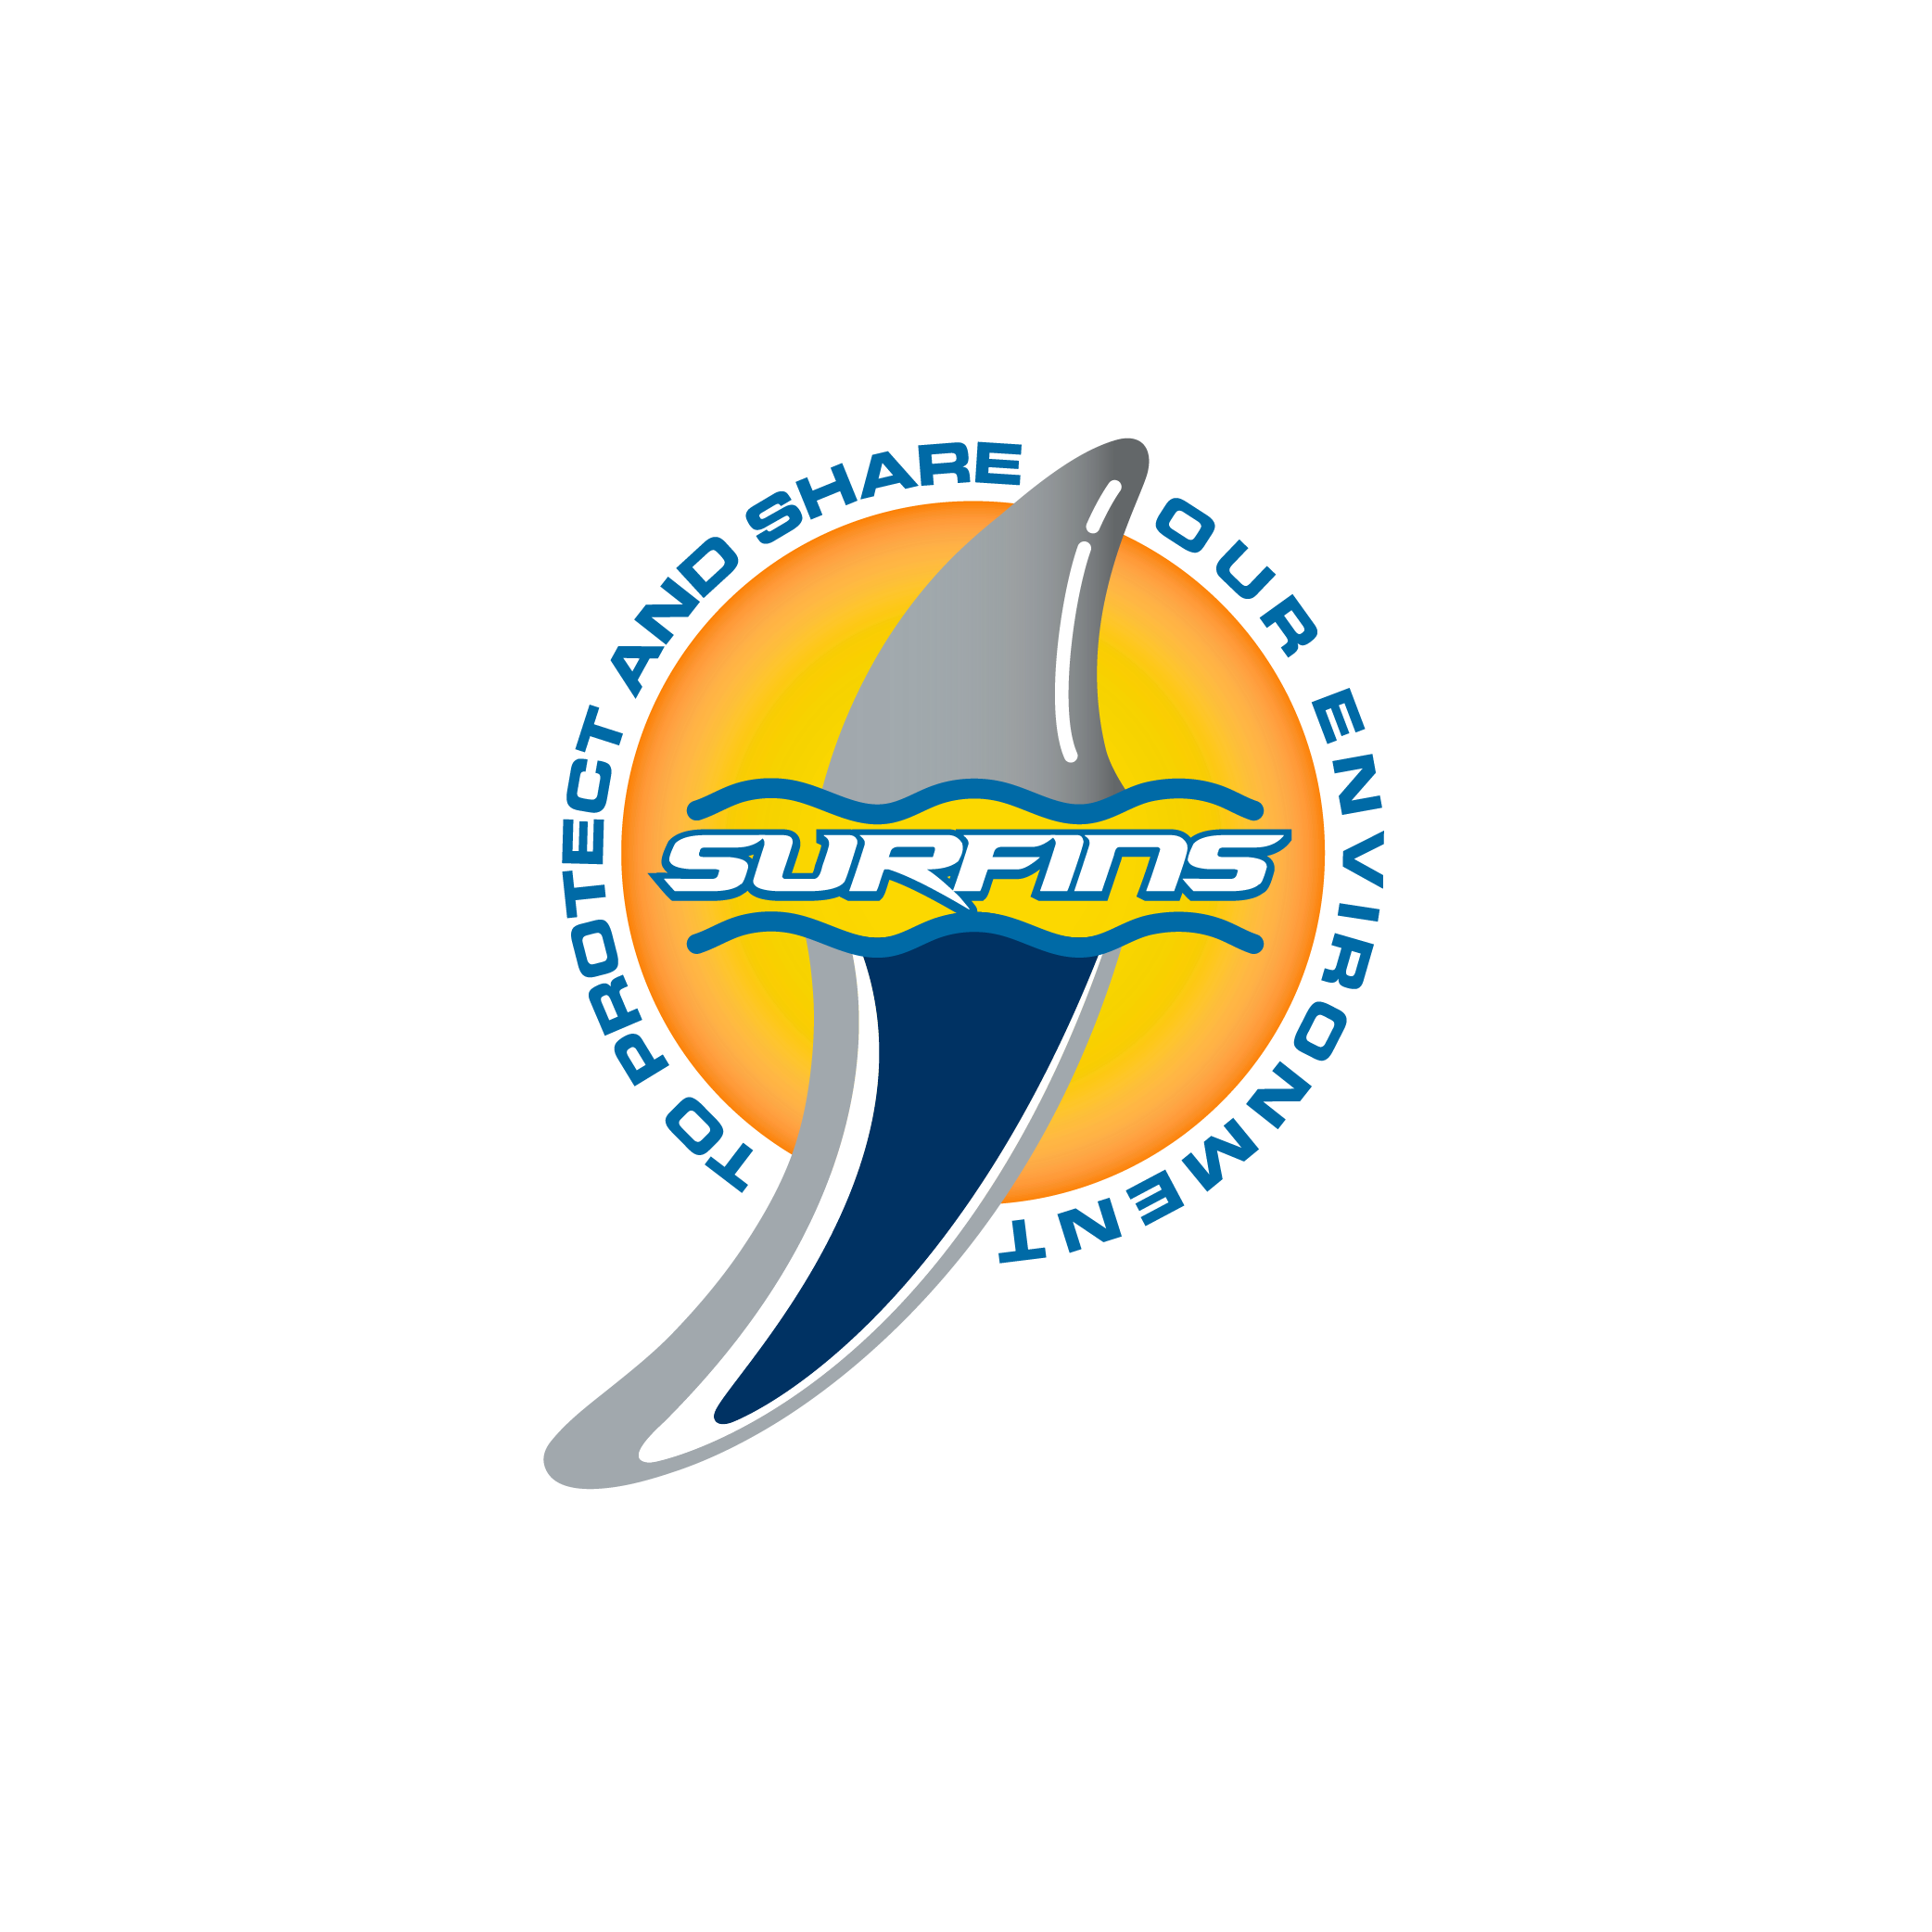 Surfins logo